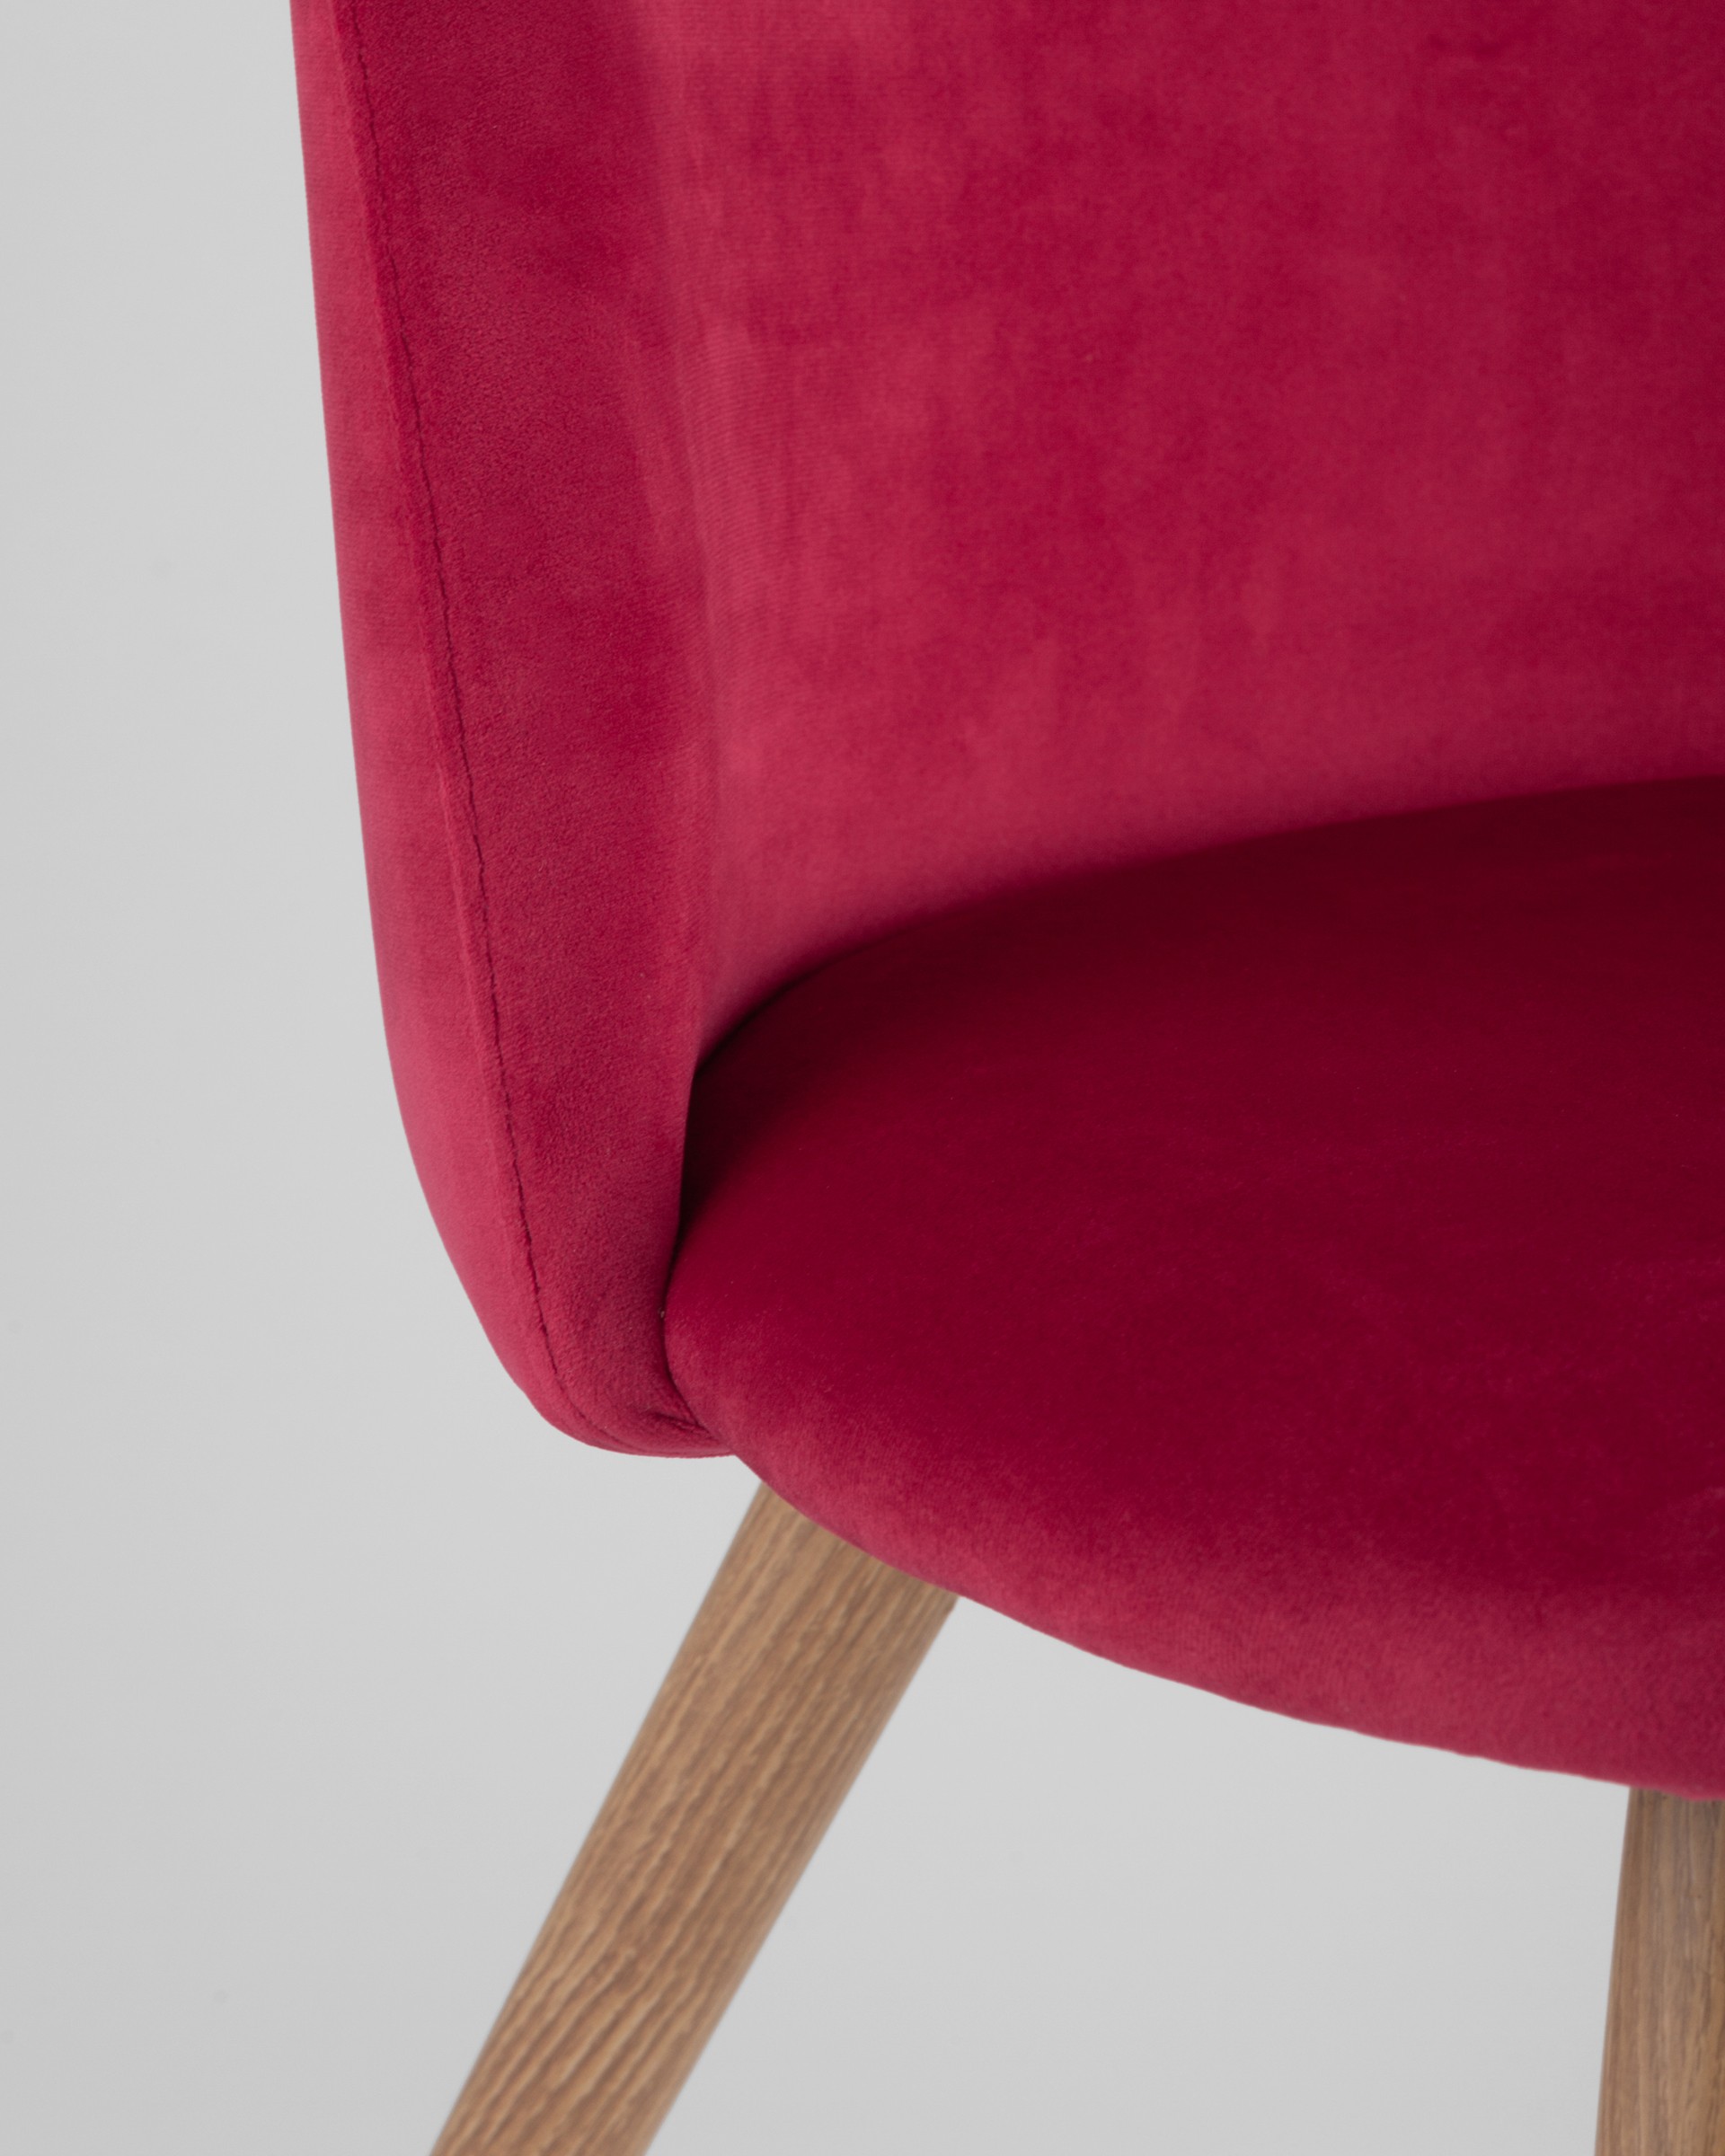 Стул Лион красный, сиденье и спинка из красного велюра, каркас оцинкованный металл с принтом под нату